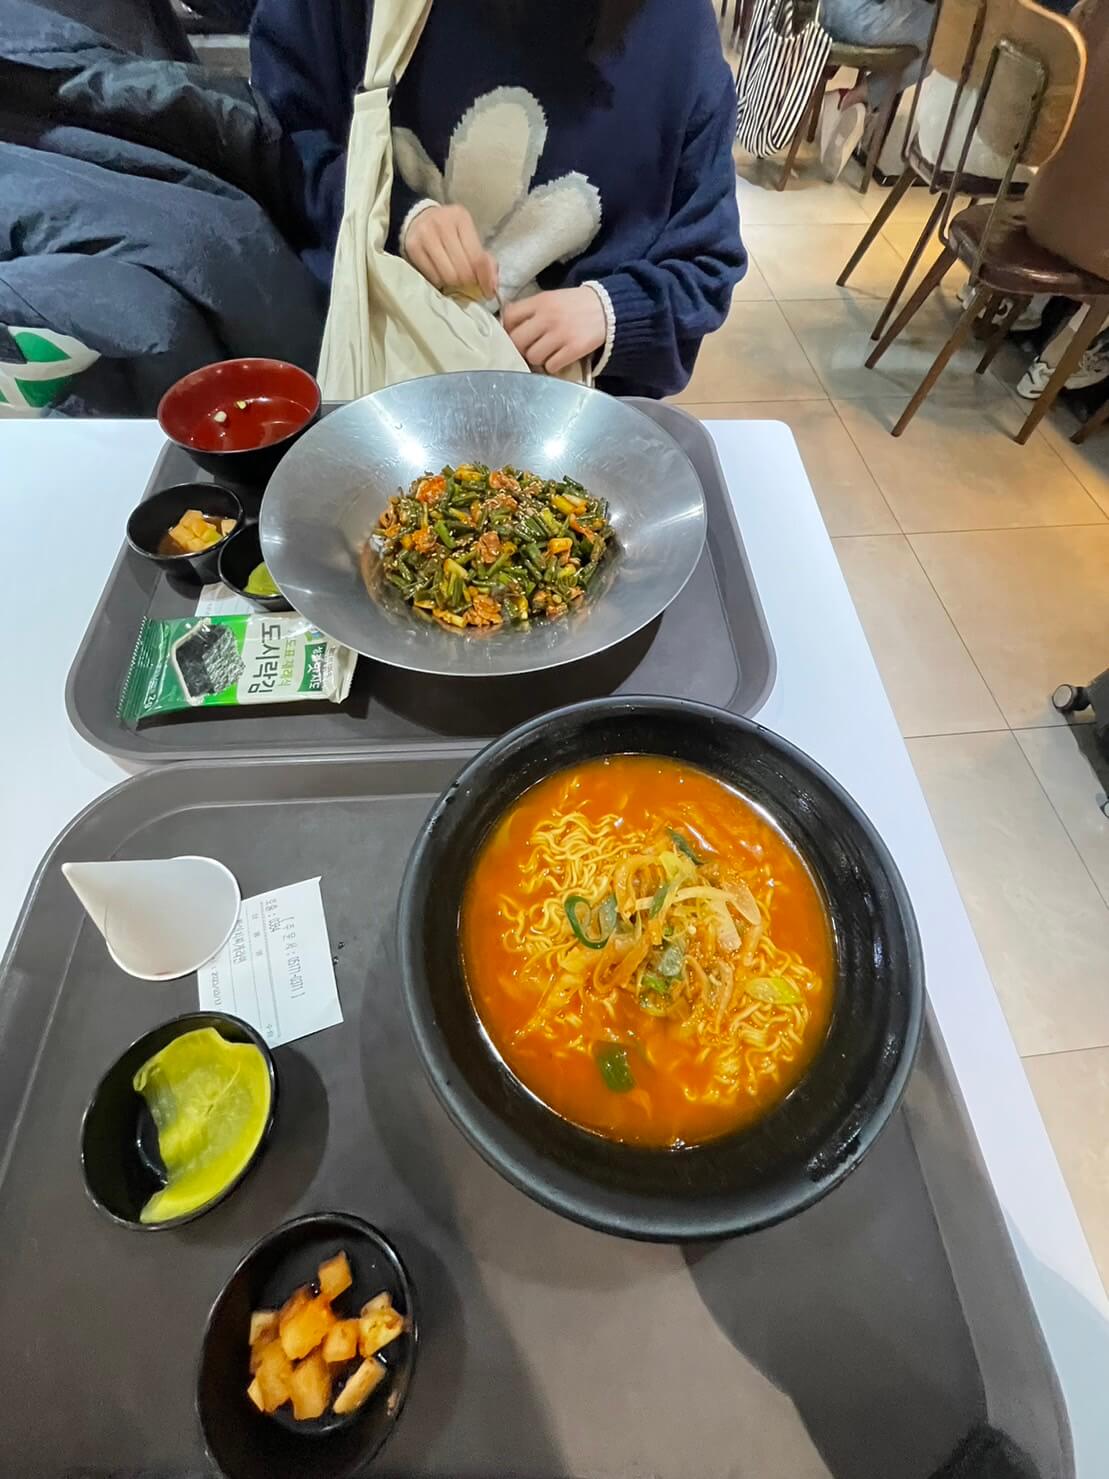 初めて韓国旅行に行ってきた高校生から旅の話とソウルの写真。食事